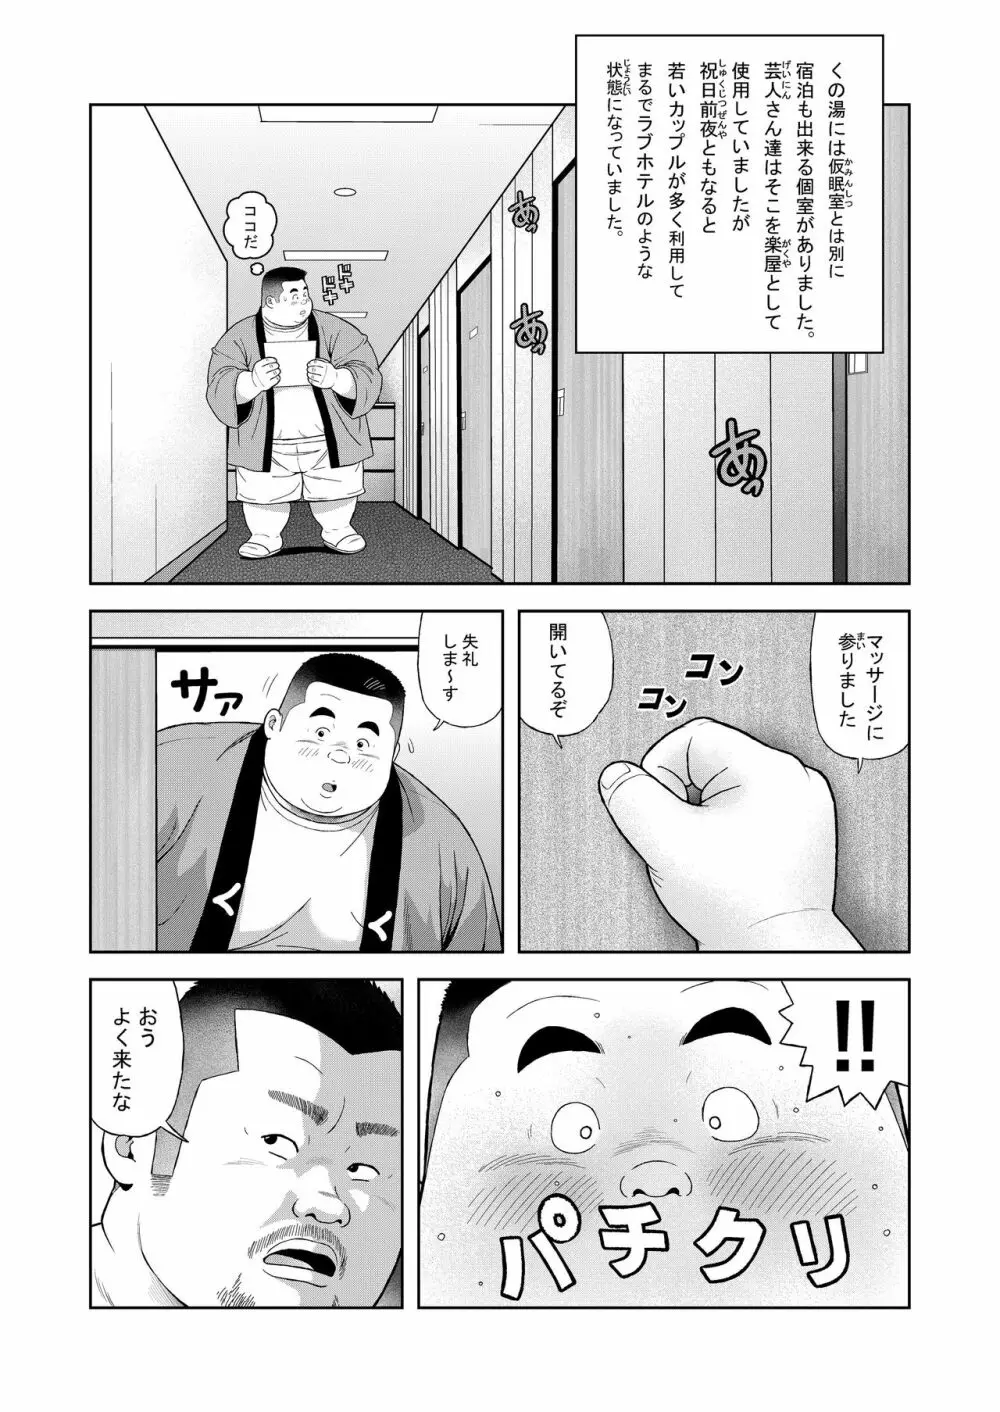 くの湯 四発め 芸人の性 - page7